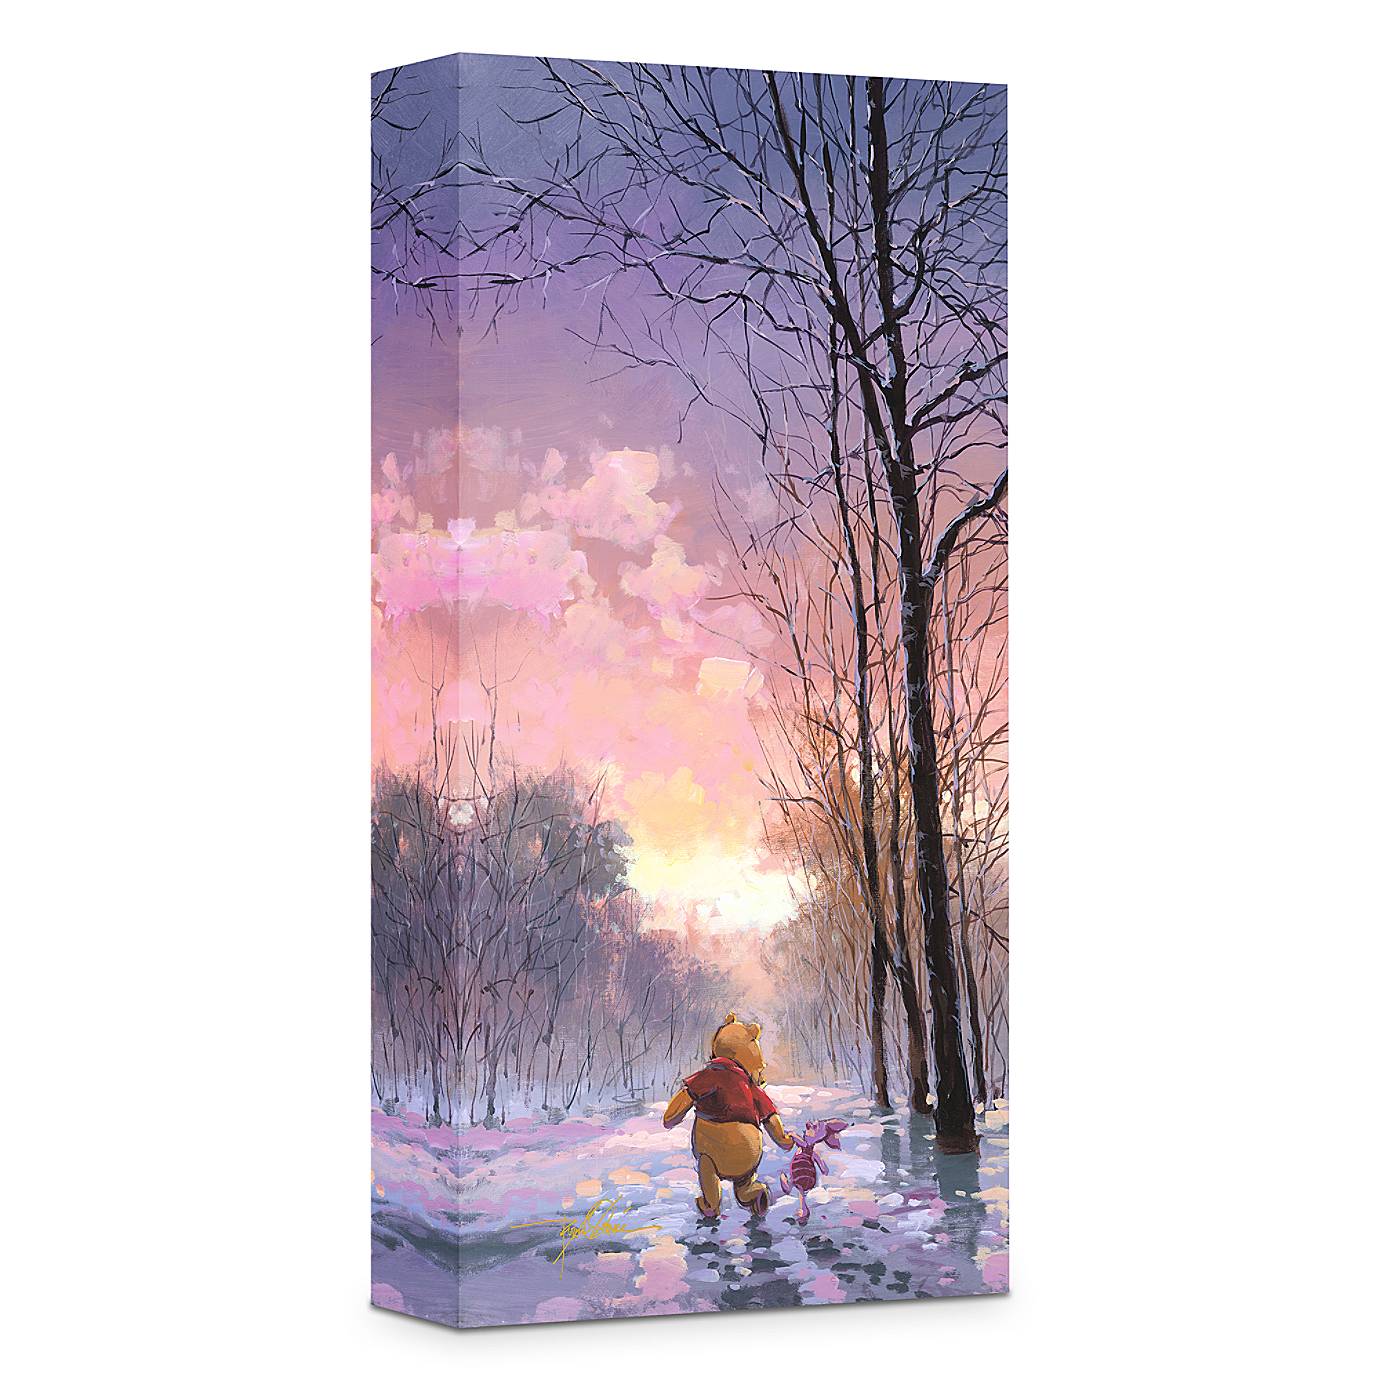 【DISNEY美国直发】限量版Snowy Path维尼熊皮杰猪油画